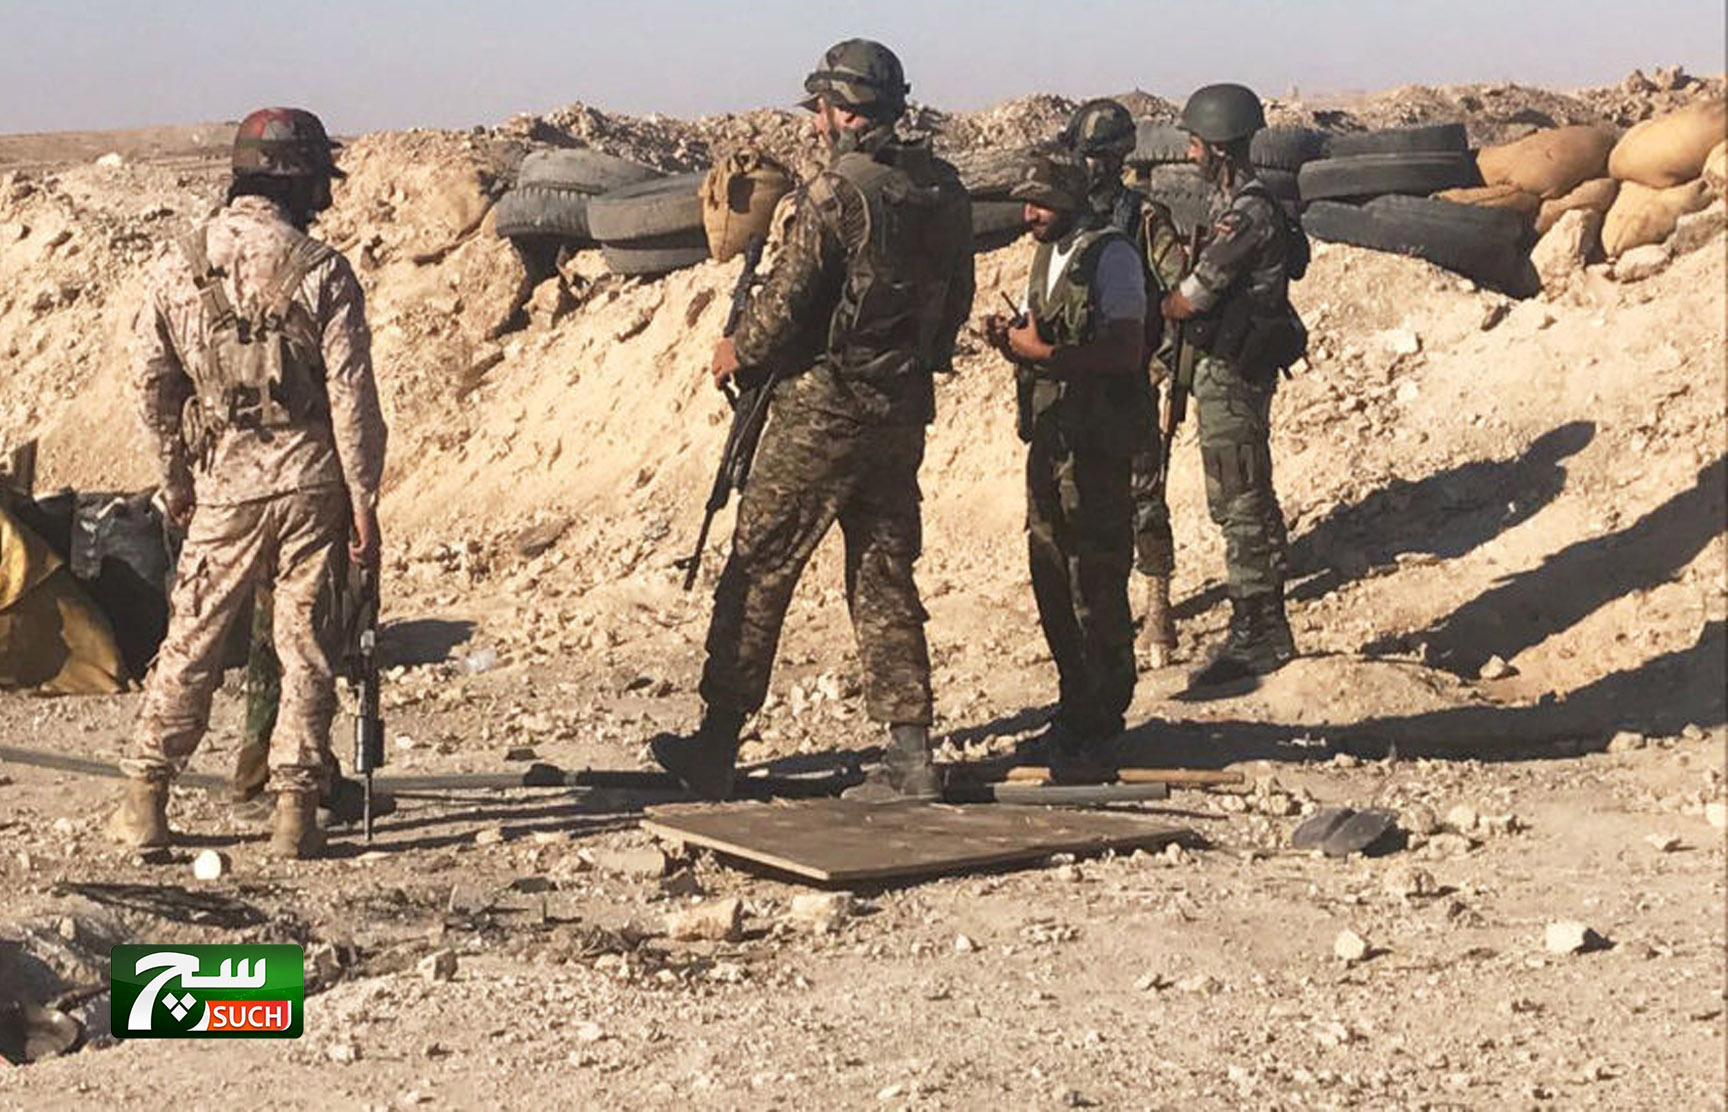 القوات السورية تعثر على ورشة للمسلحين لتحضير ذخائر كيميائية في الغوطة الشرقية